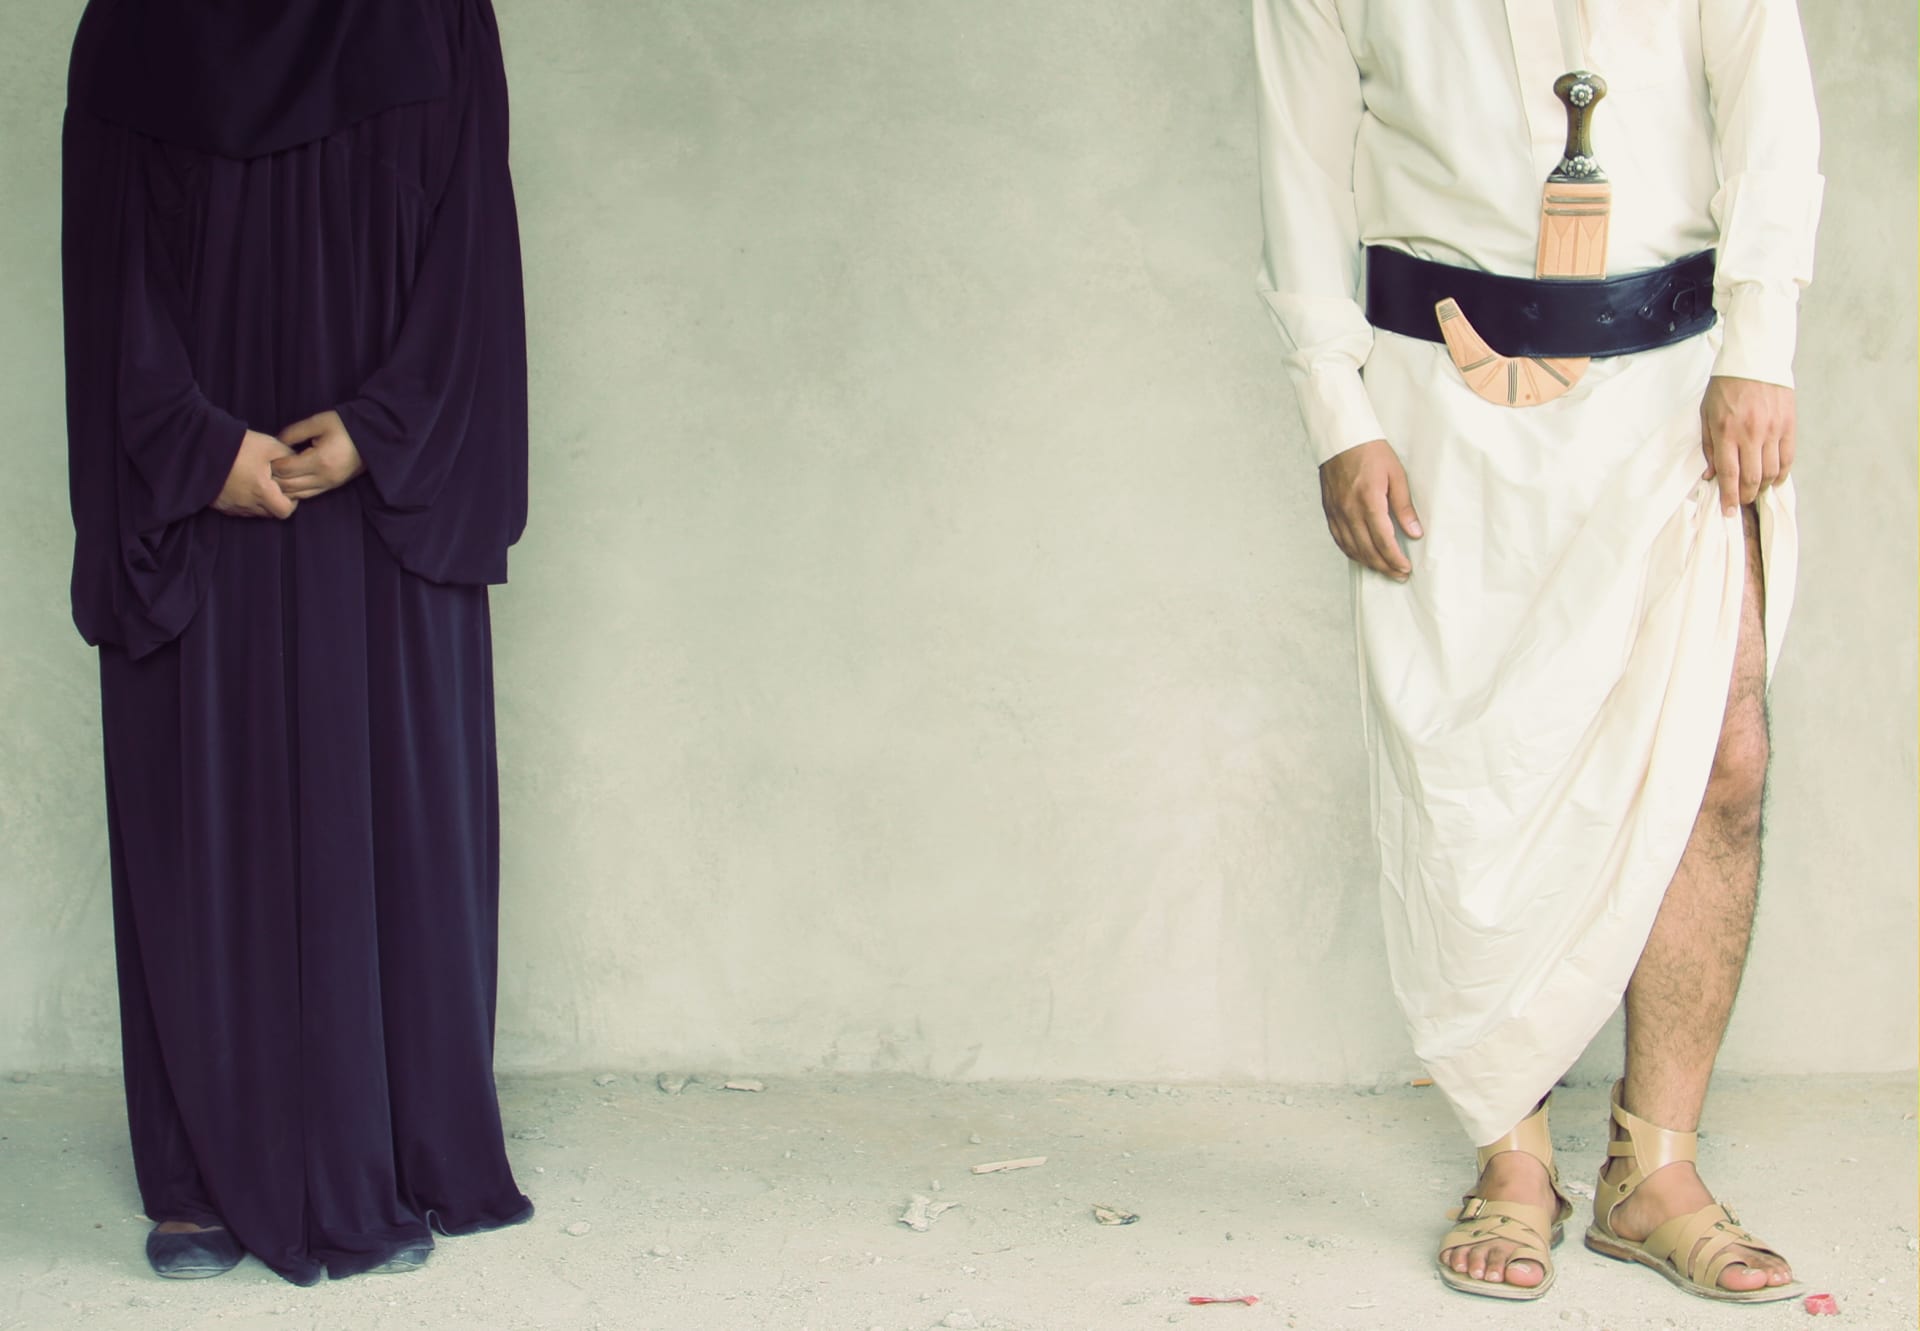 كيف تغير الرجال مقارنة بالمرأة اليمنية في 2013 في عمل "وطني حبيبي"؟